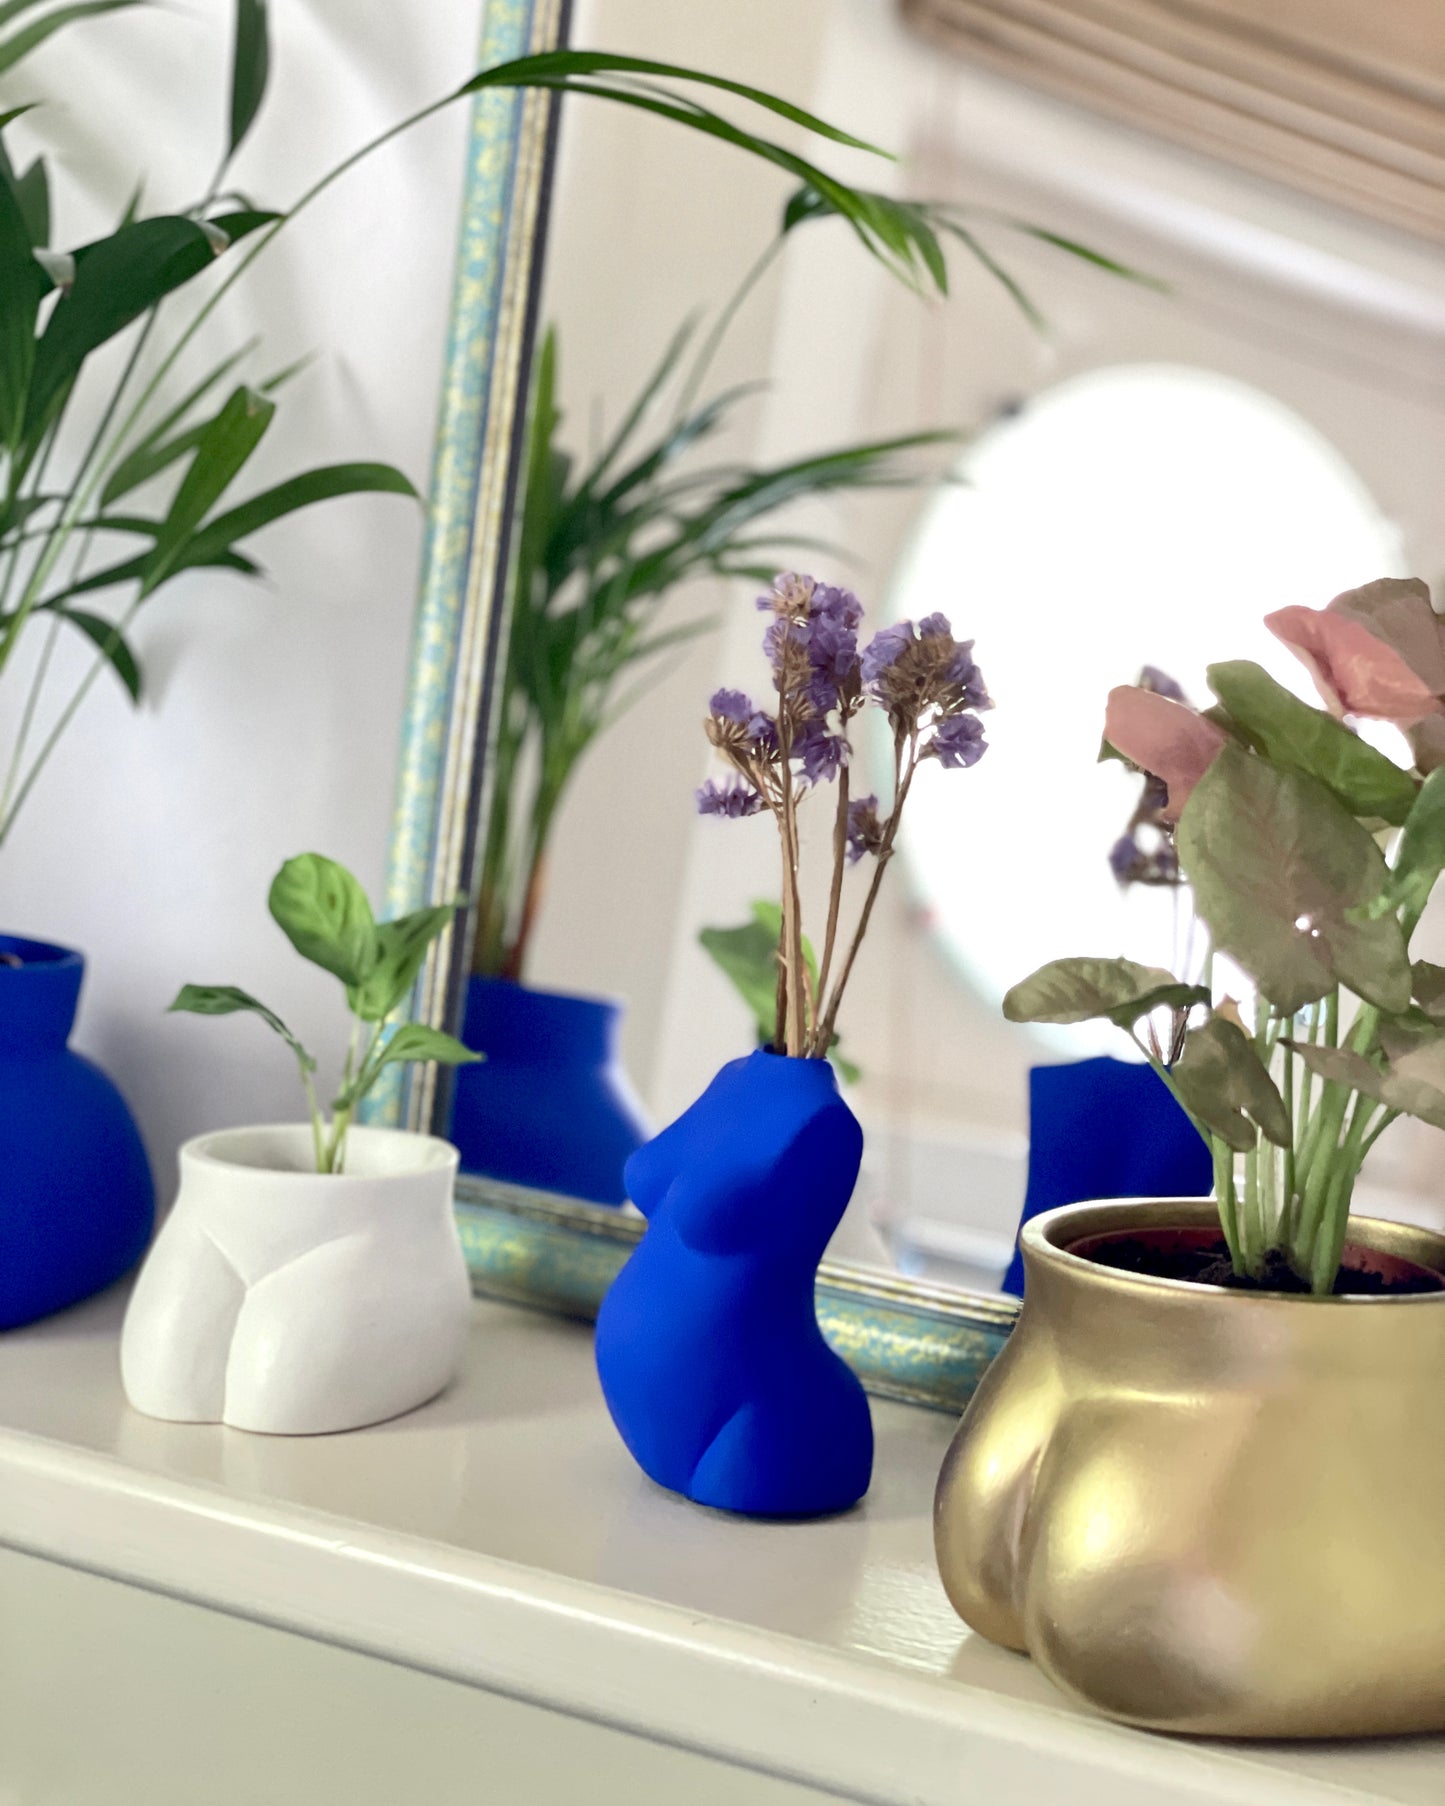 Cache pot Mini Fessier de Maison Tessier, face avant, pubis, de couleur Lune avec une plante, à coté du vase Maman et de pot Fessier doré et Bleu Klein, face à un miroir